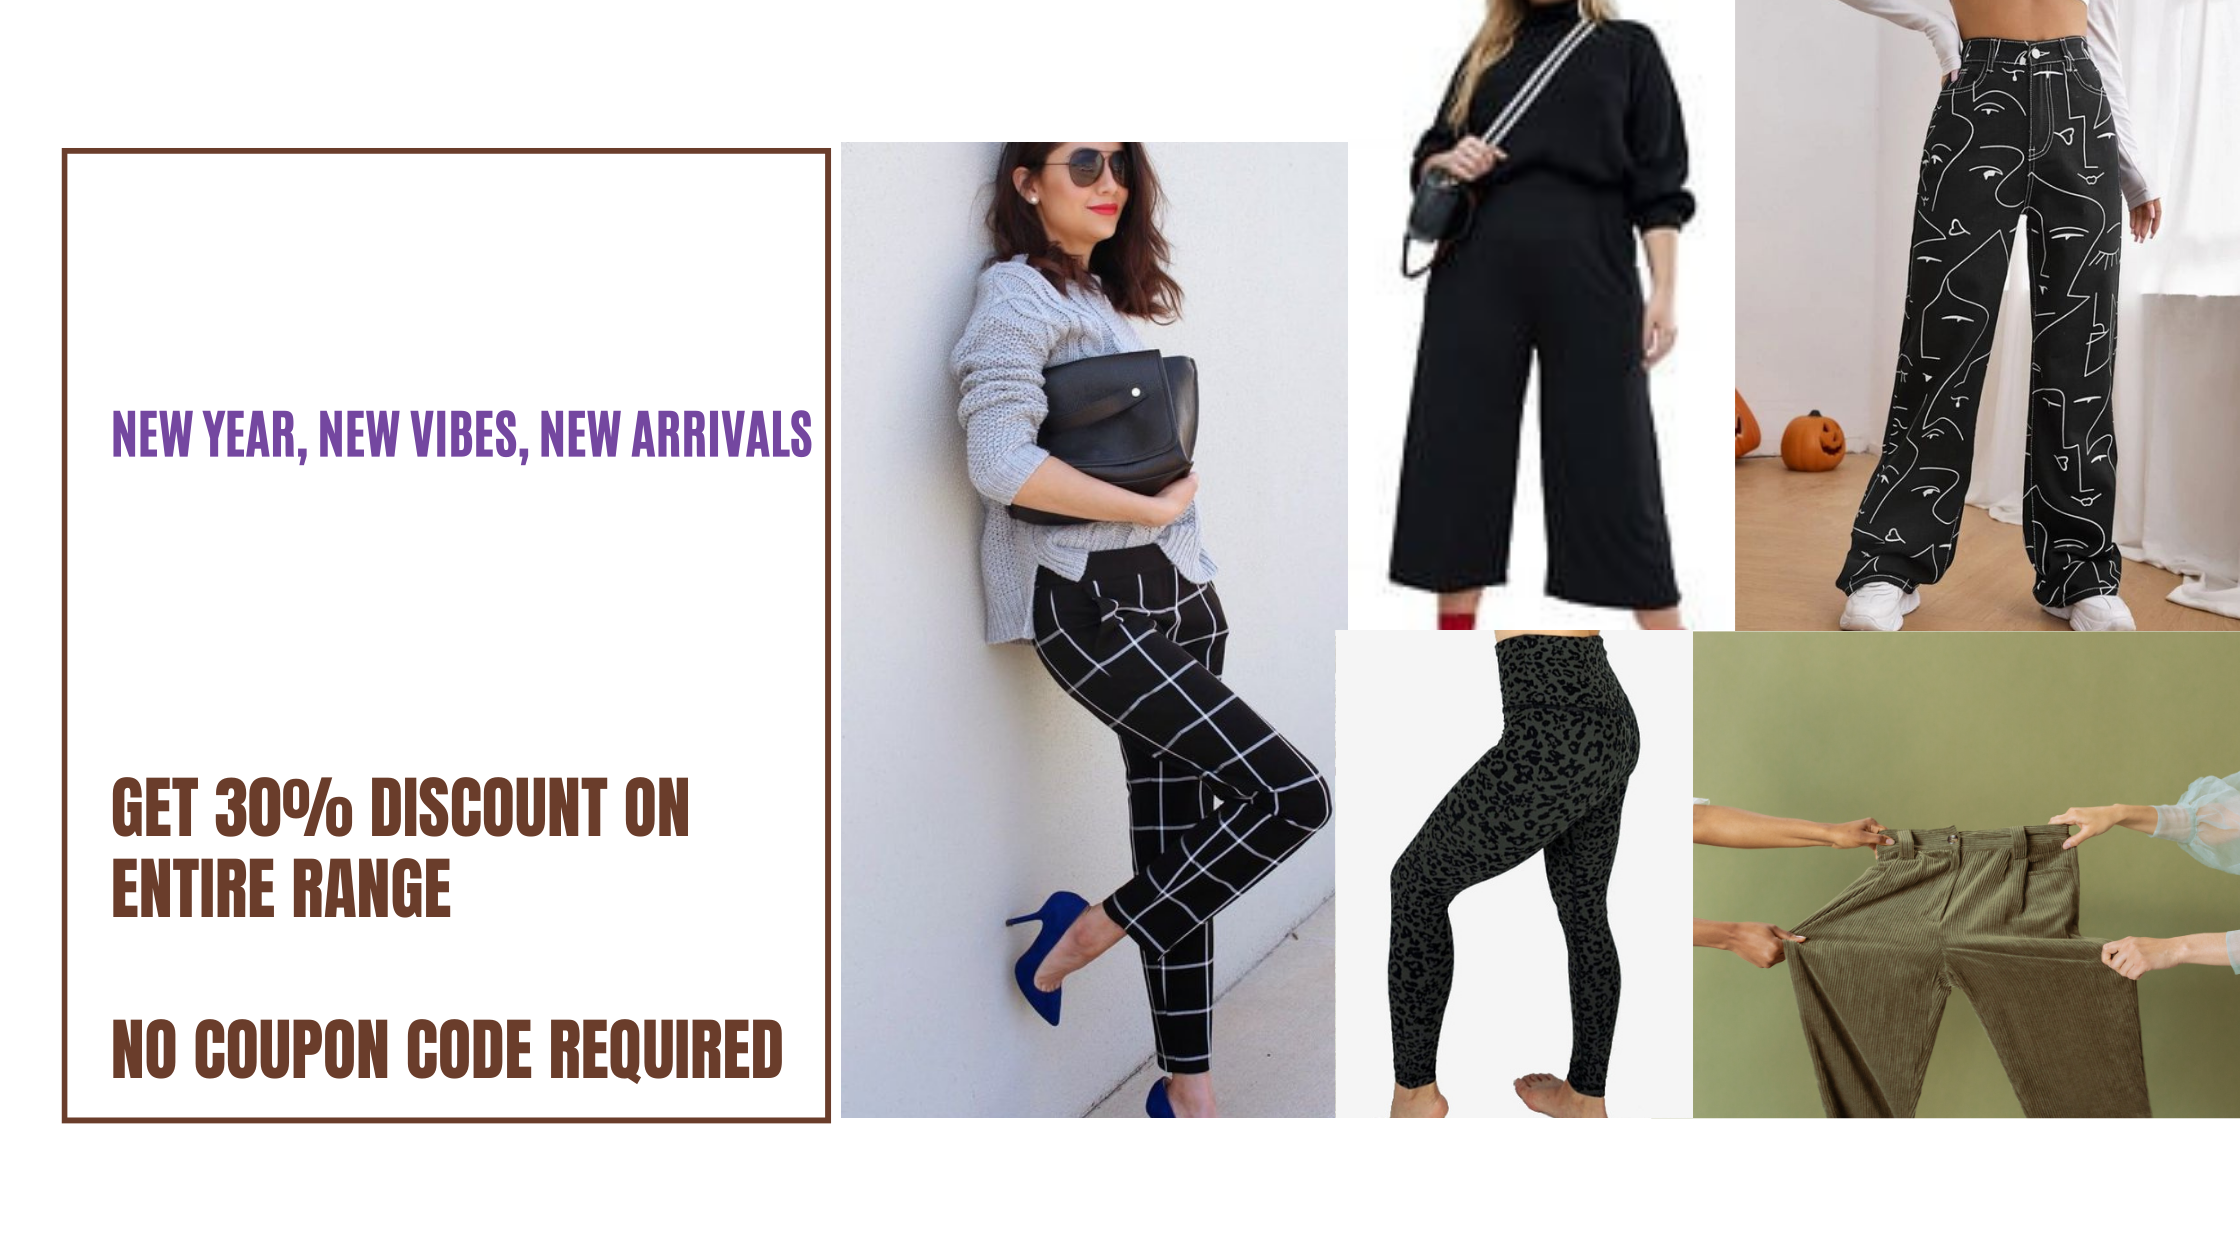 Buy Sorbino men regular fit drawstring plain dress pants navy Online |  Brands For Less